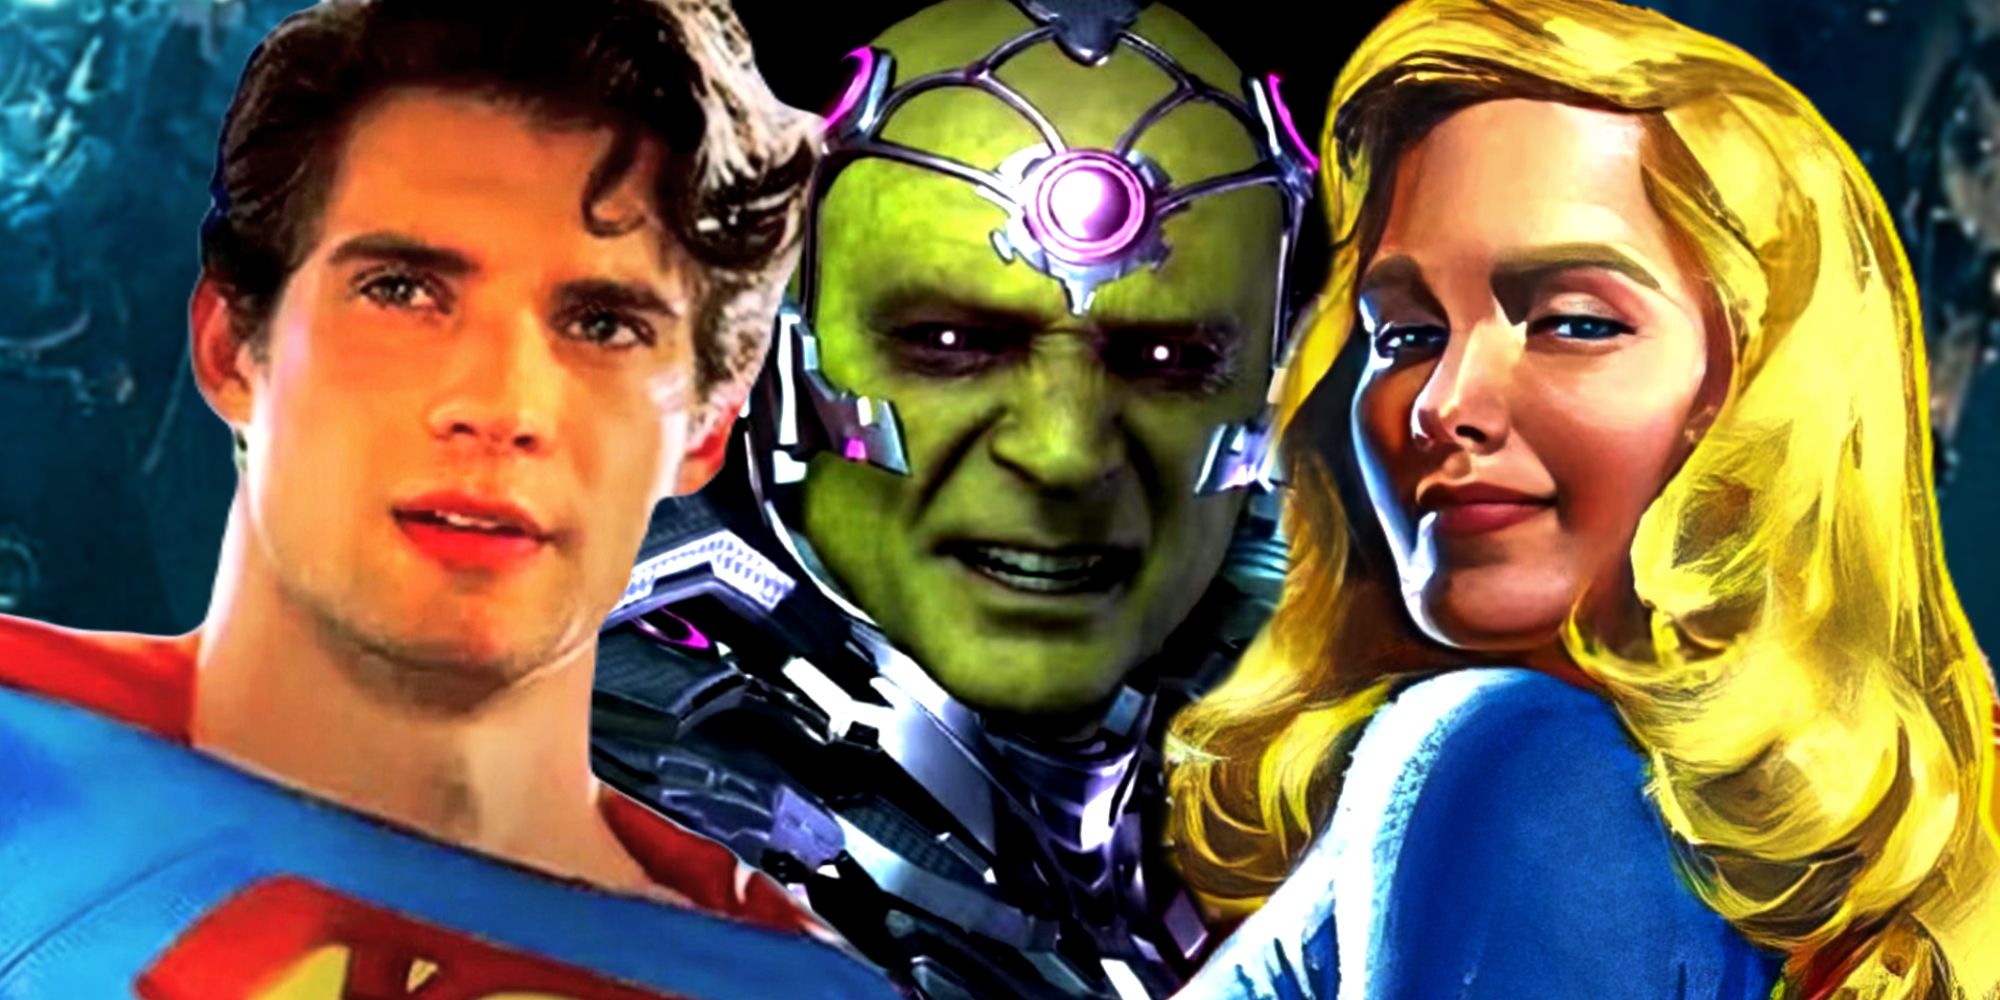 Brainiac vs Superman and Supergirl in The DCU